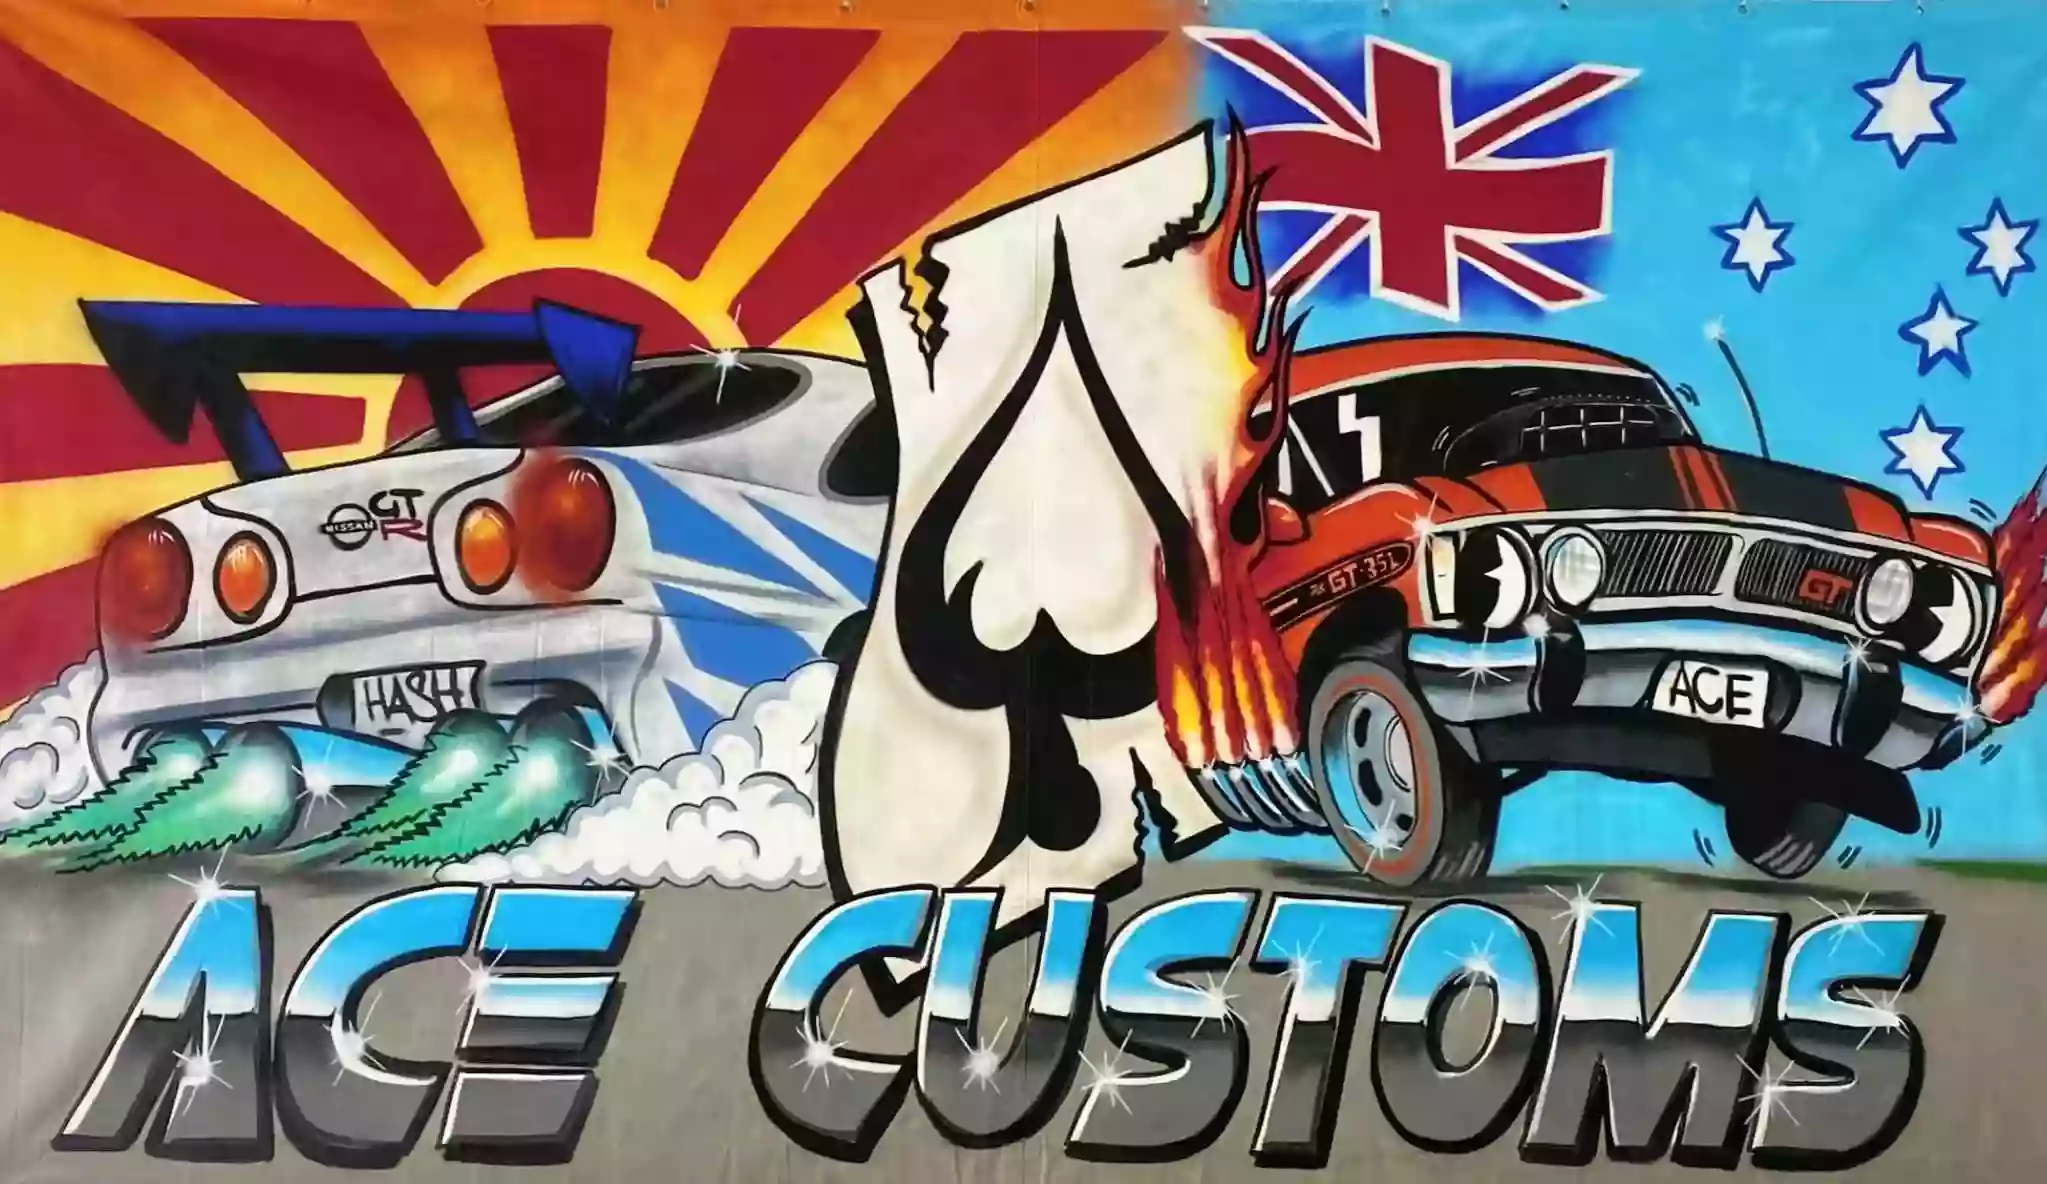 Ace Customs